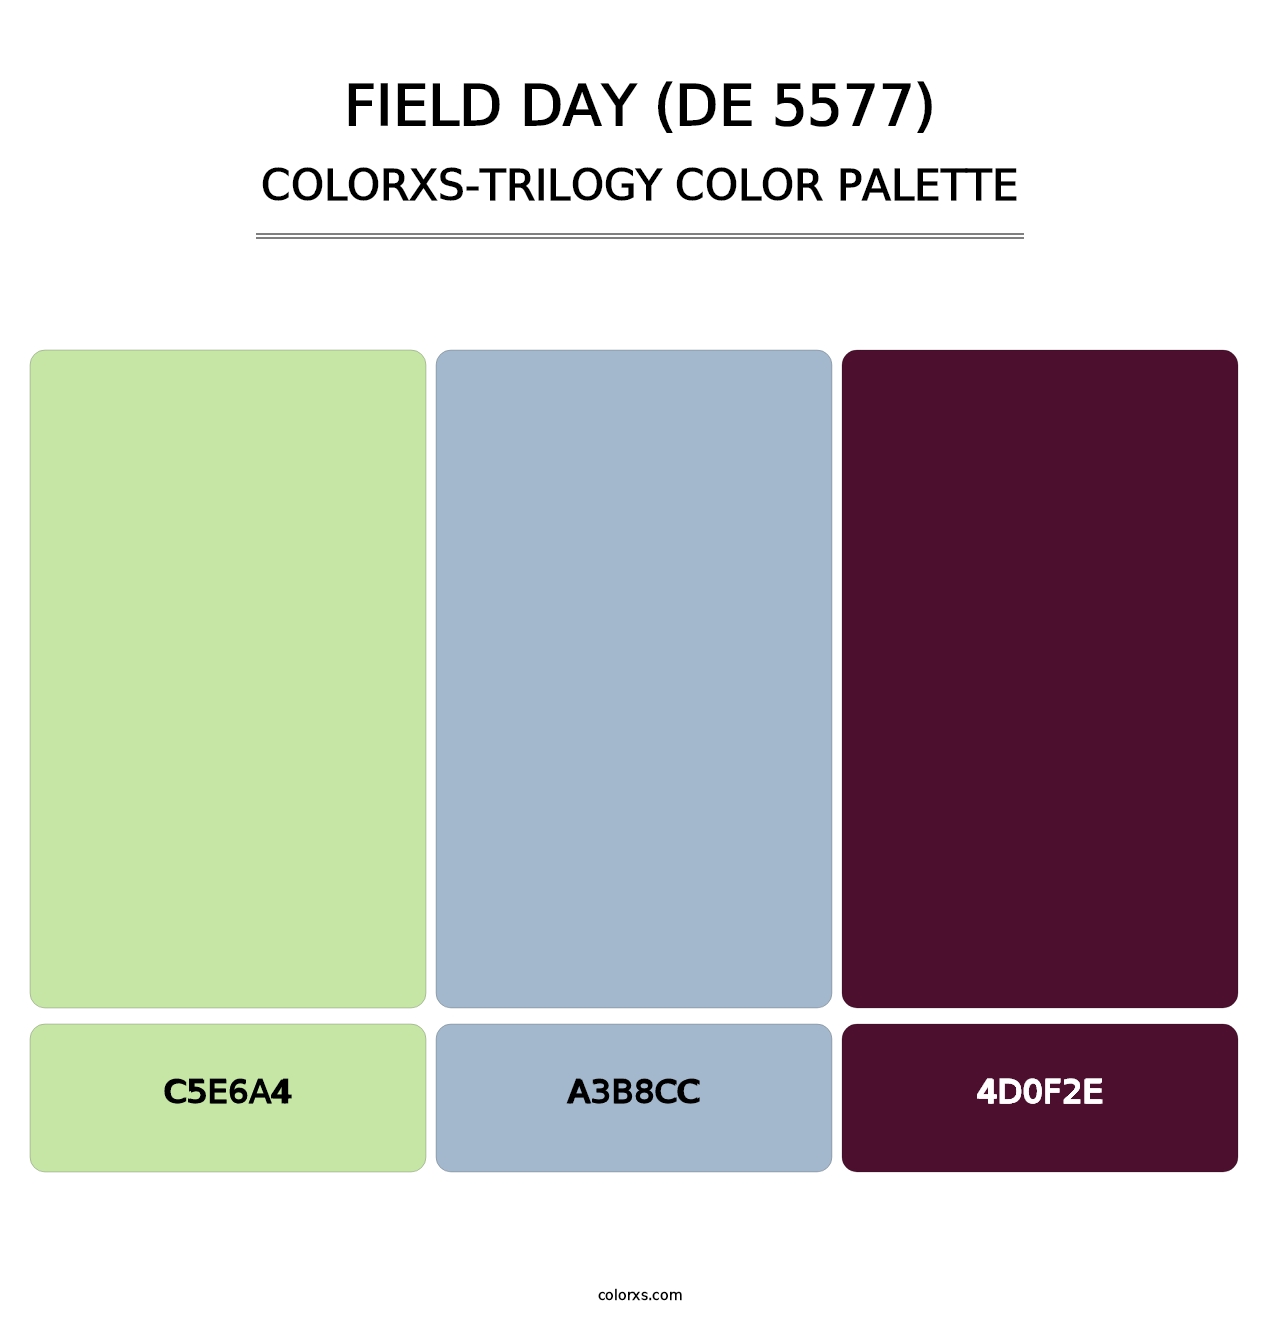 Field Day (DE 5577) - Colorxs Trilogy Palette